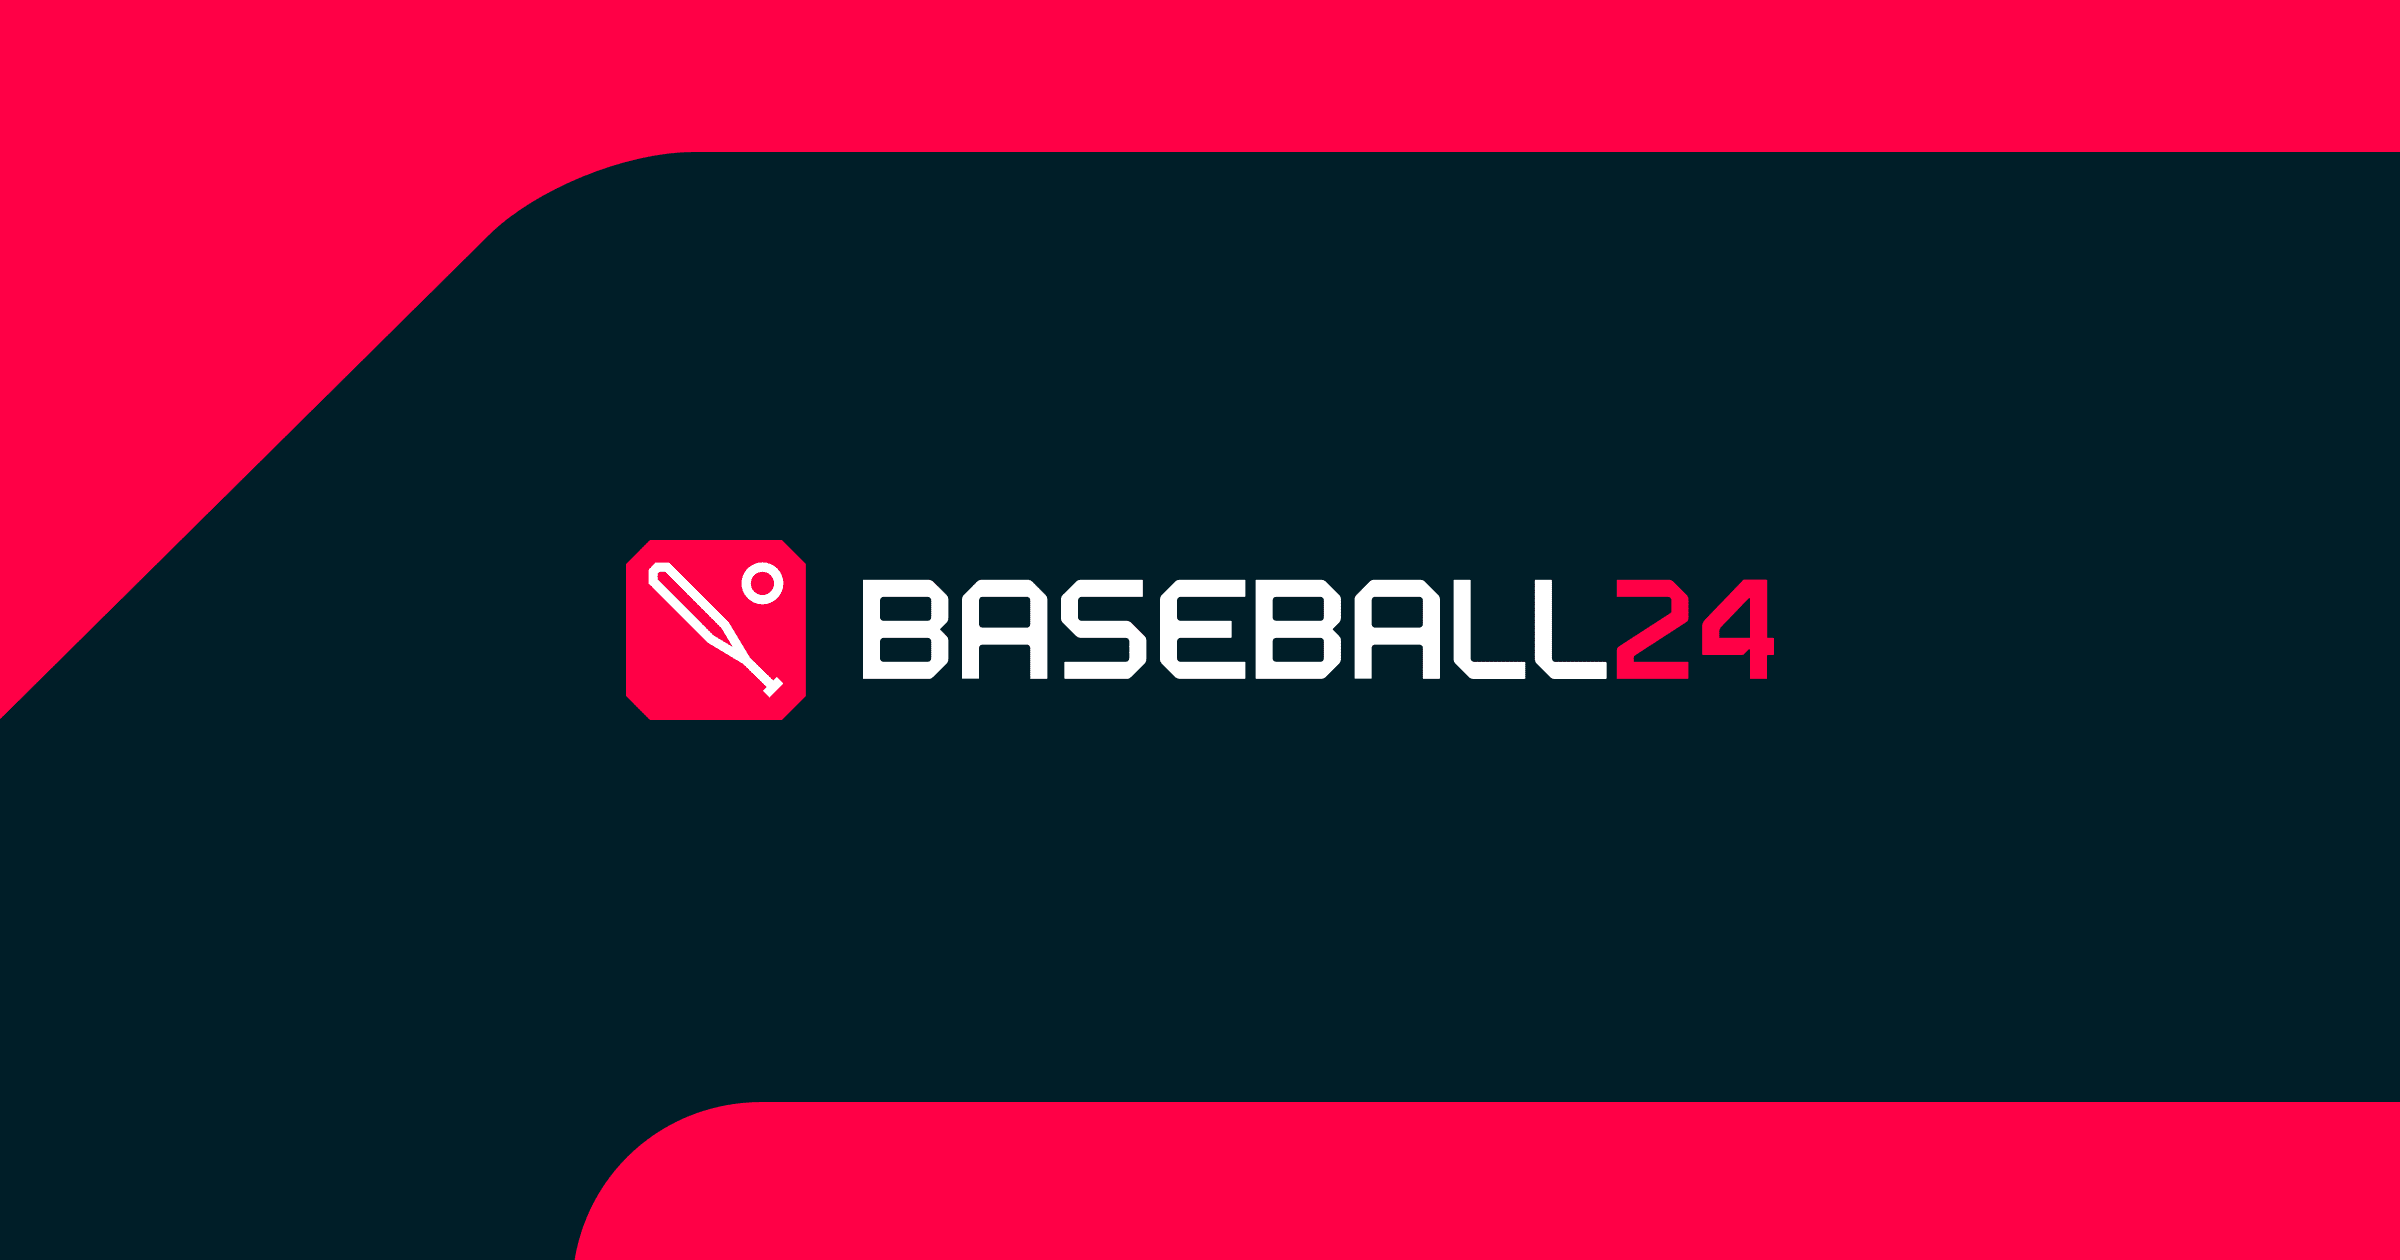 Baseball24 Live Baseball Scores, Results, Standings